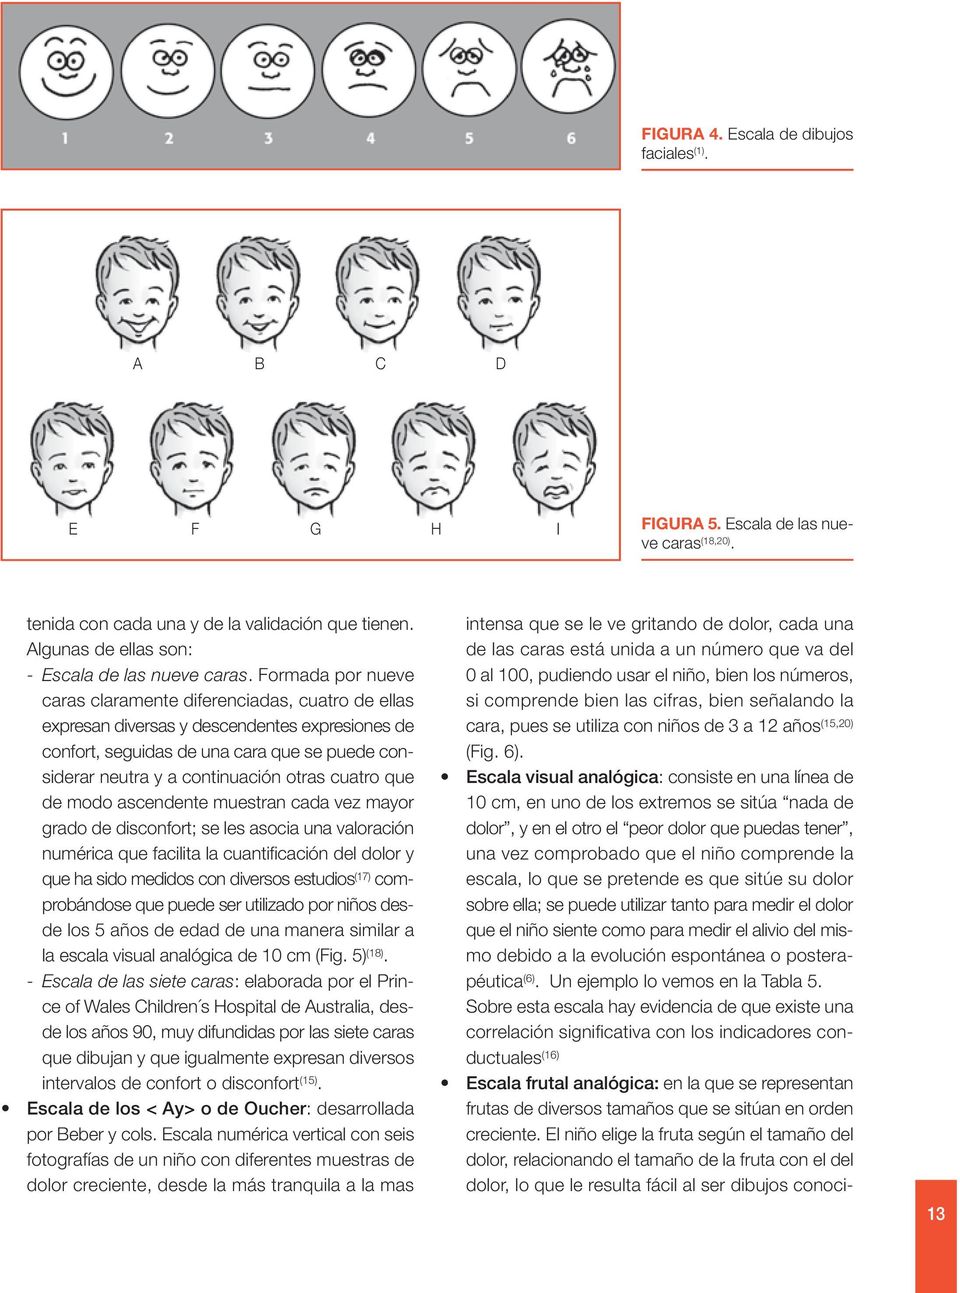 Formada por nueve caras claramente diferenciadas, cuatro de ellas expresan diversas y descendentes expresiones de confort, seguidas de una cara que se puede considerar neutra y a continuación otras